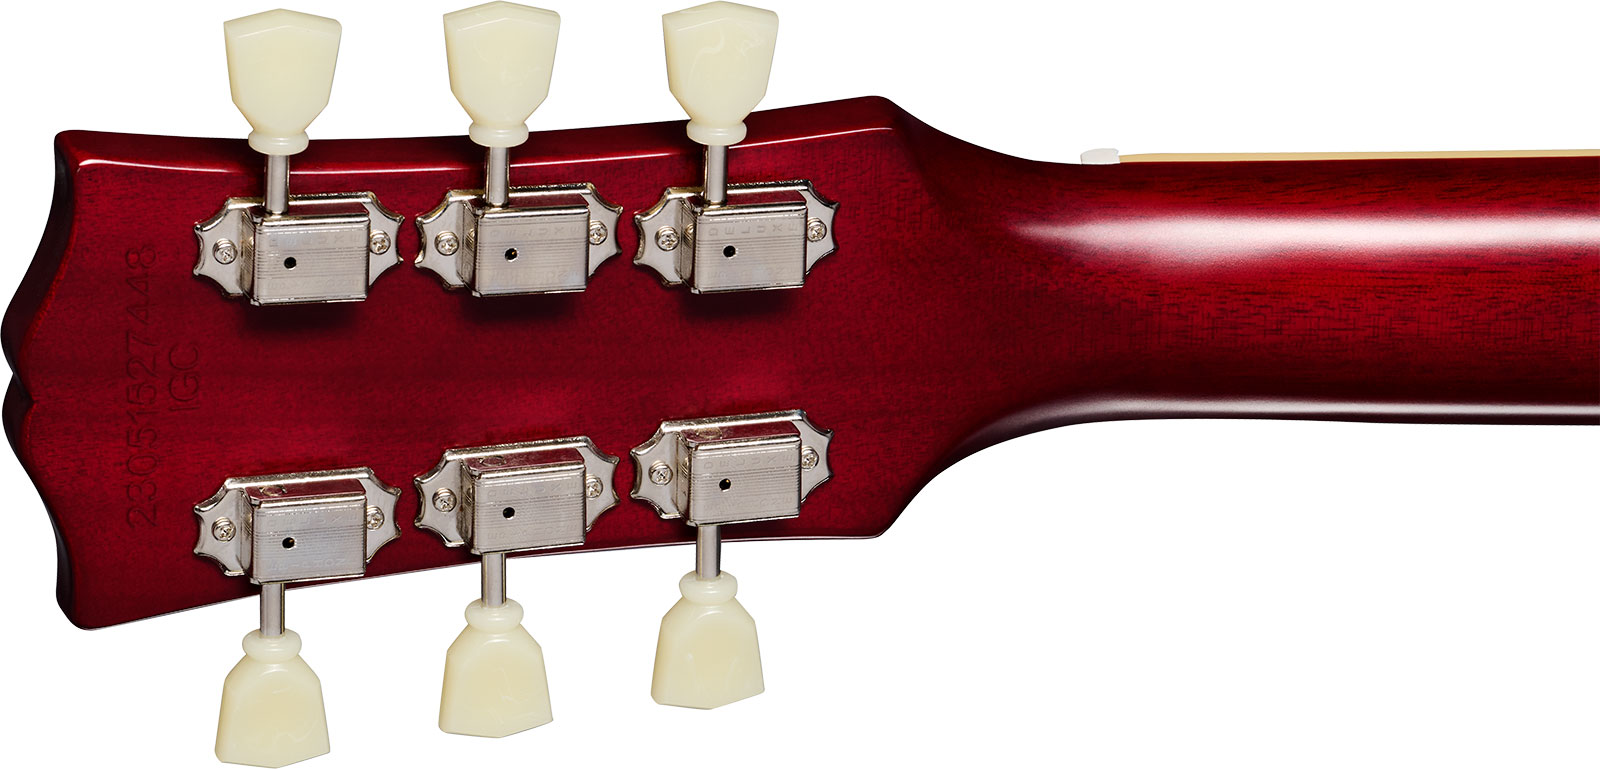 Epiphone 1959 Les Paul Standard Inspired By 2h Gibson Ht Lau - Vos Factory Burst - Guitarra eléctrica de corte único. - Variation 4